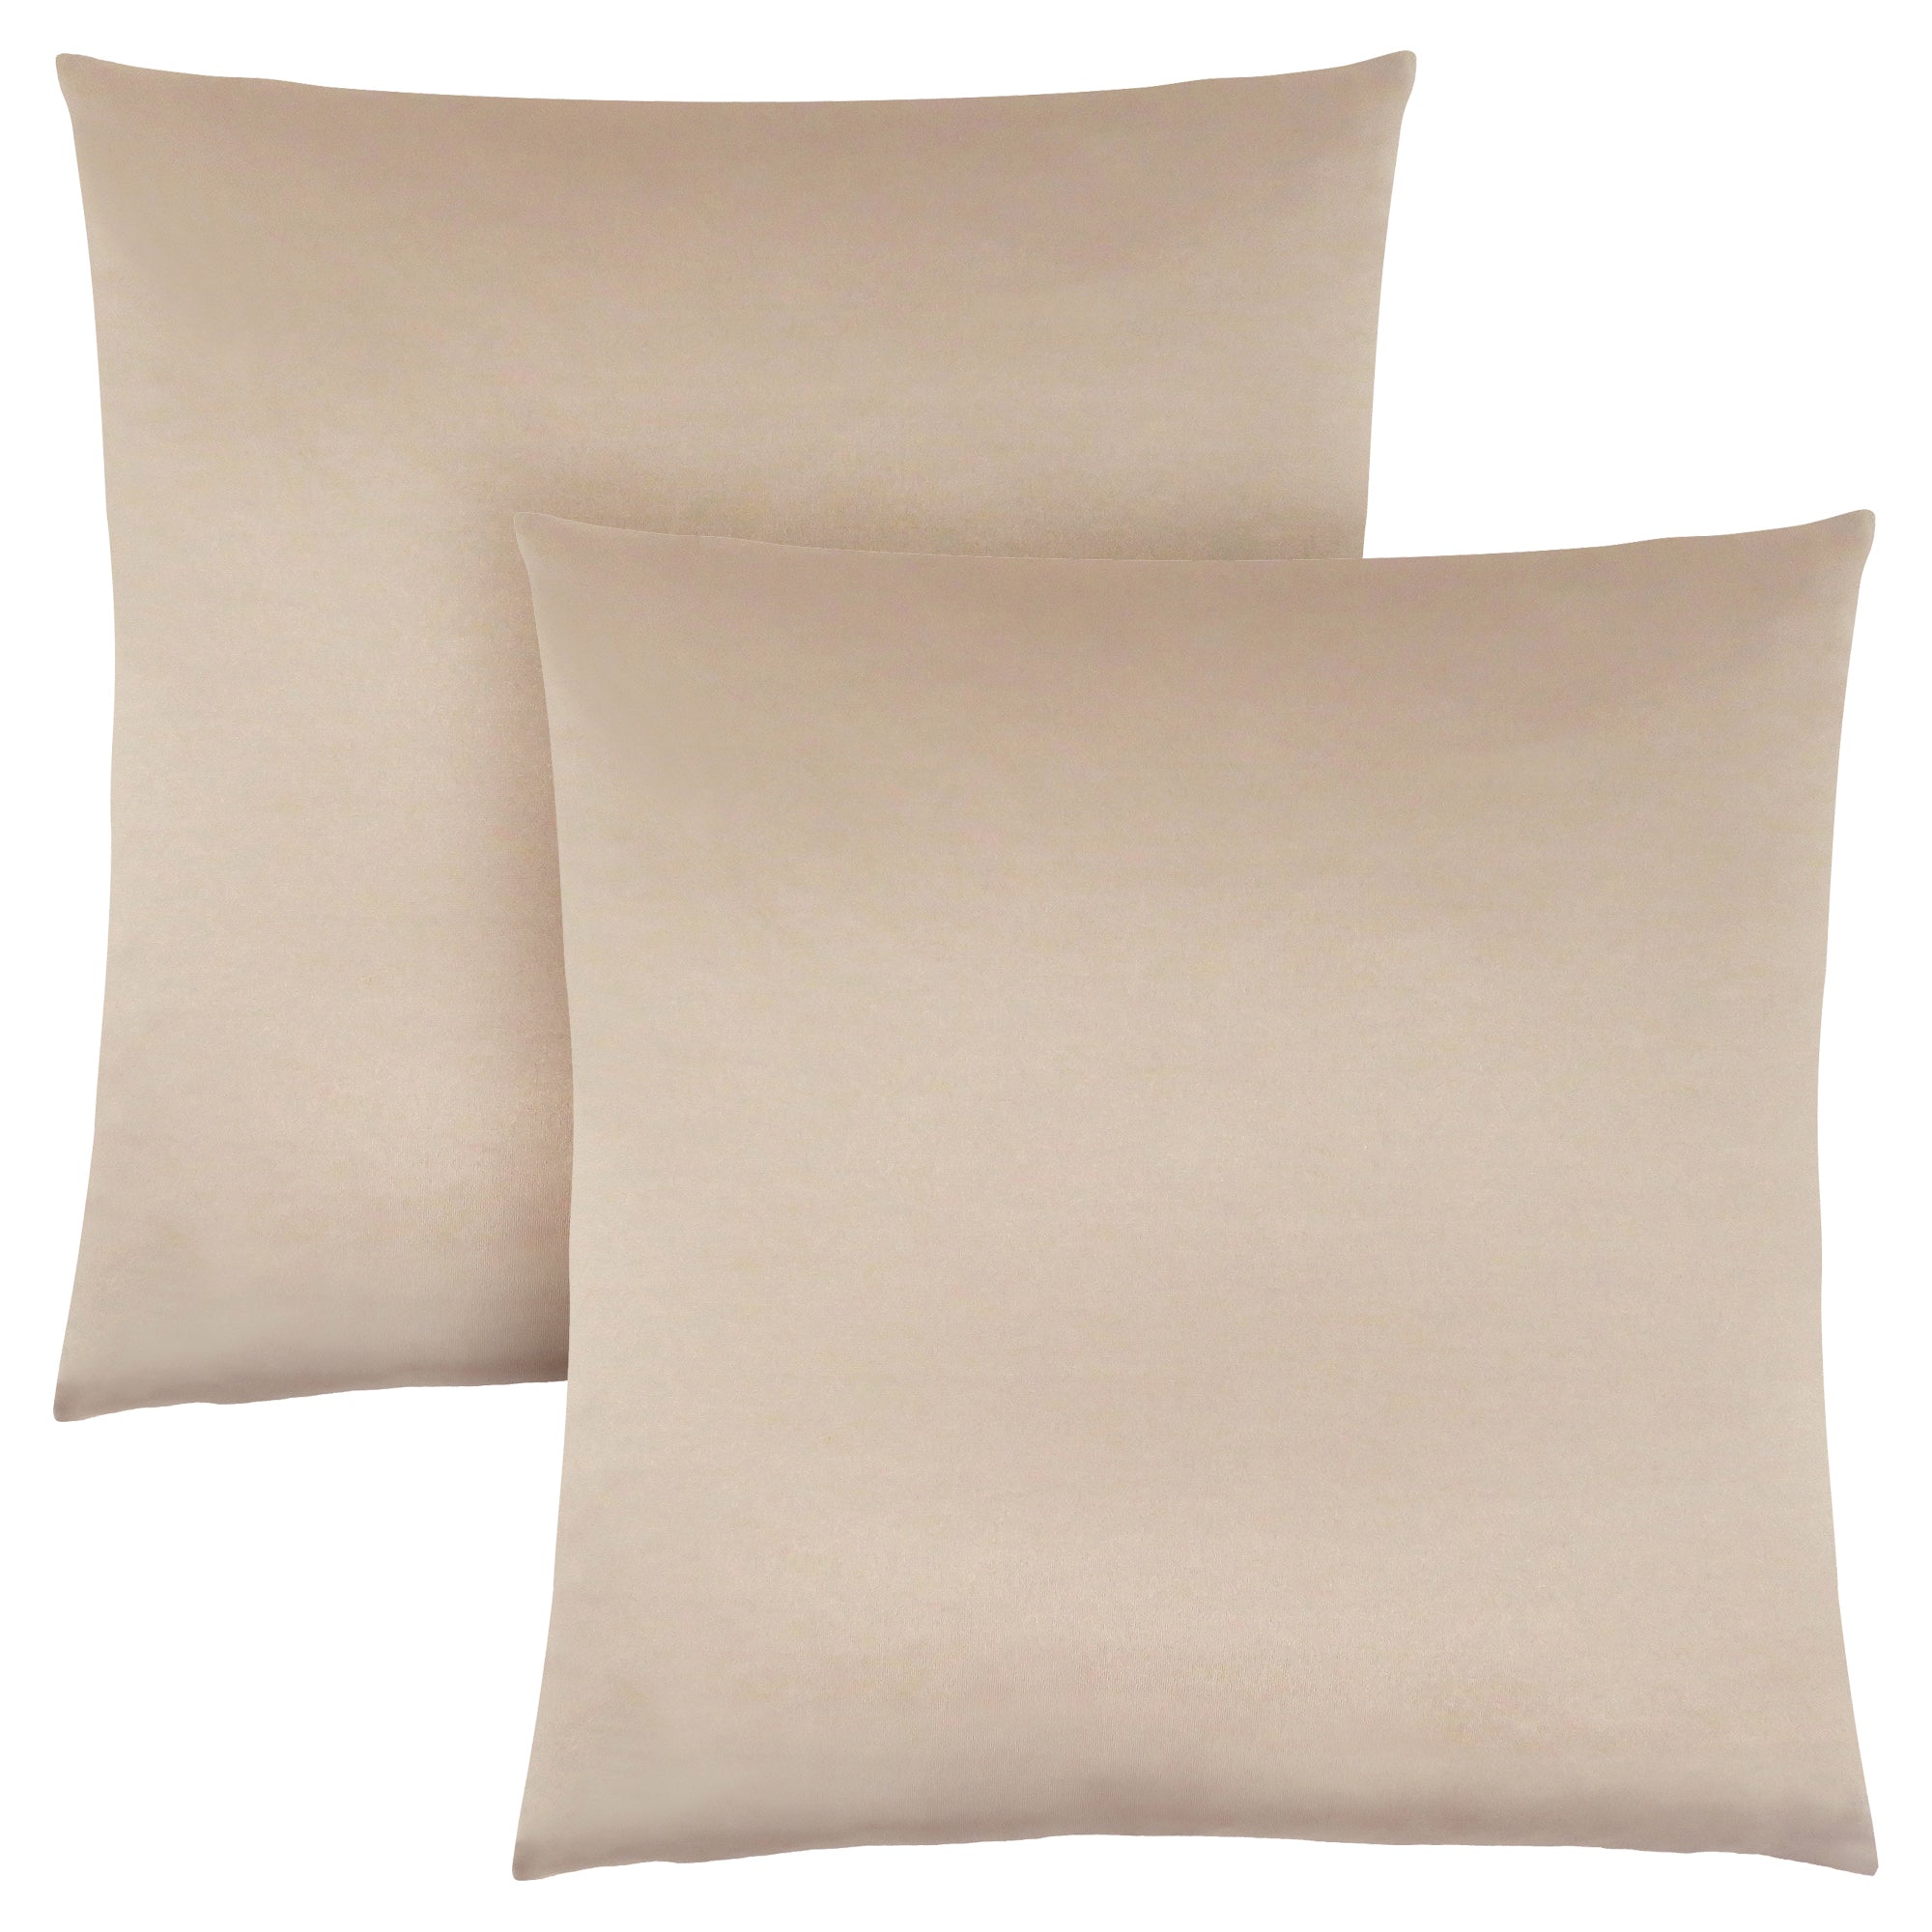 Pillow - 18X 18 / Gold Satin / 2Pcs